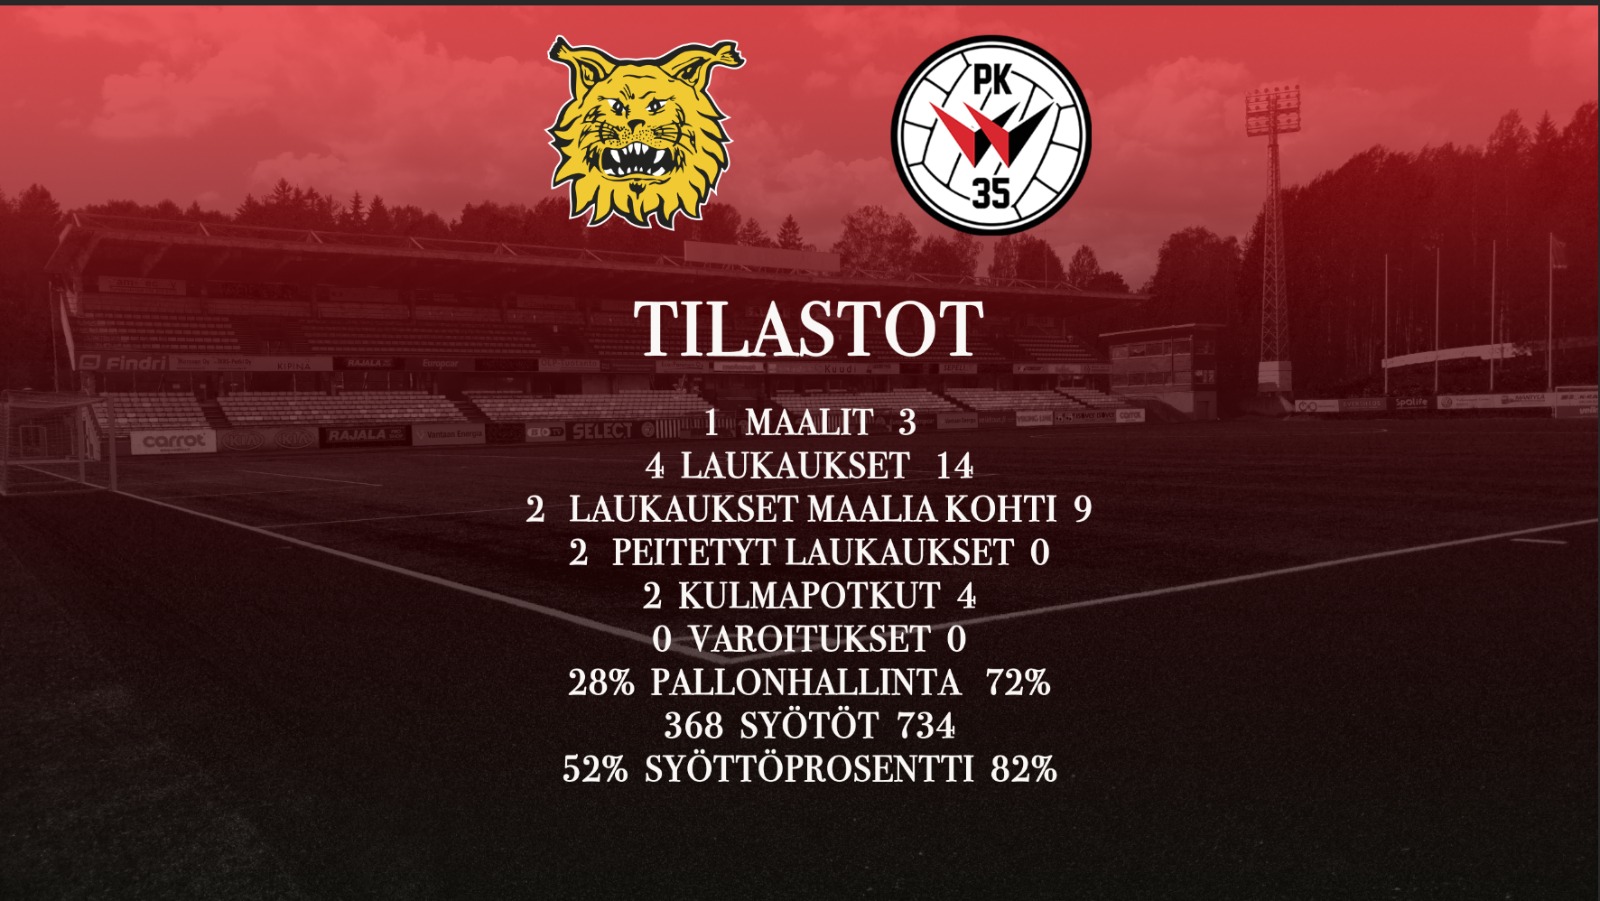 Tilastokatsaus: Ilves – PK-35 Vantaa 1-3 (1-1)